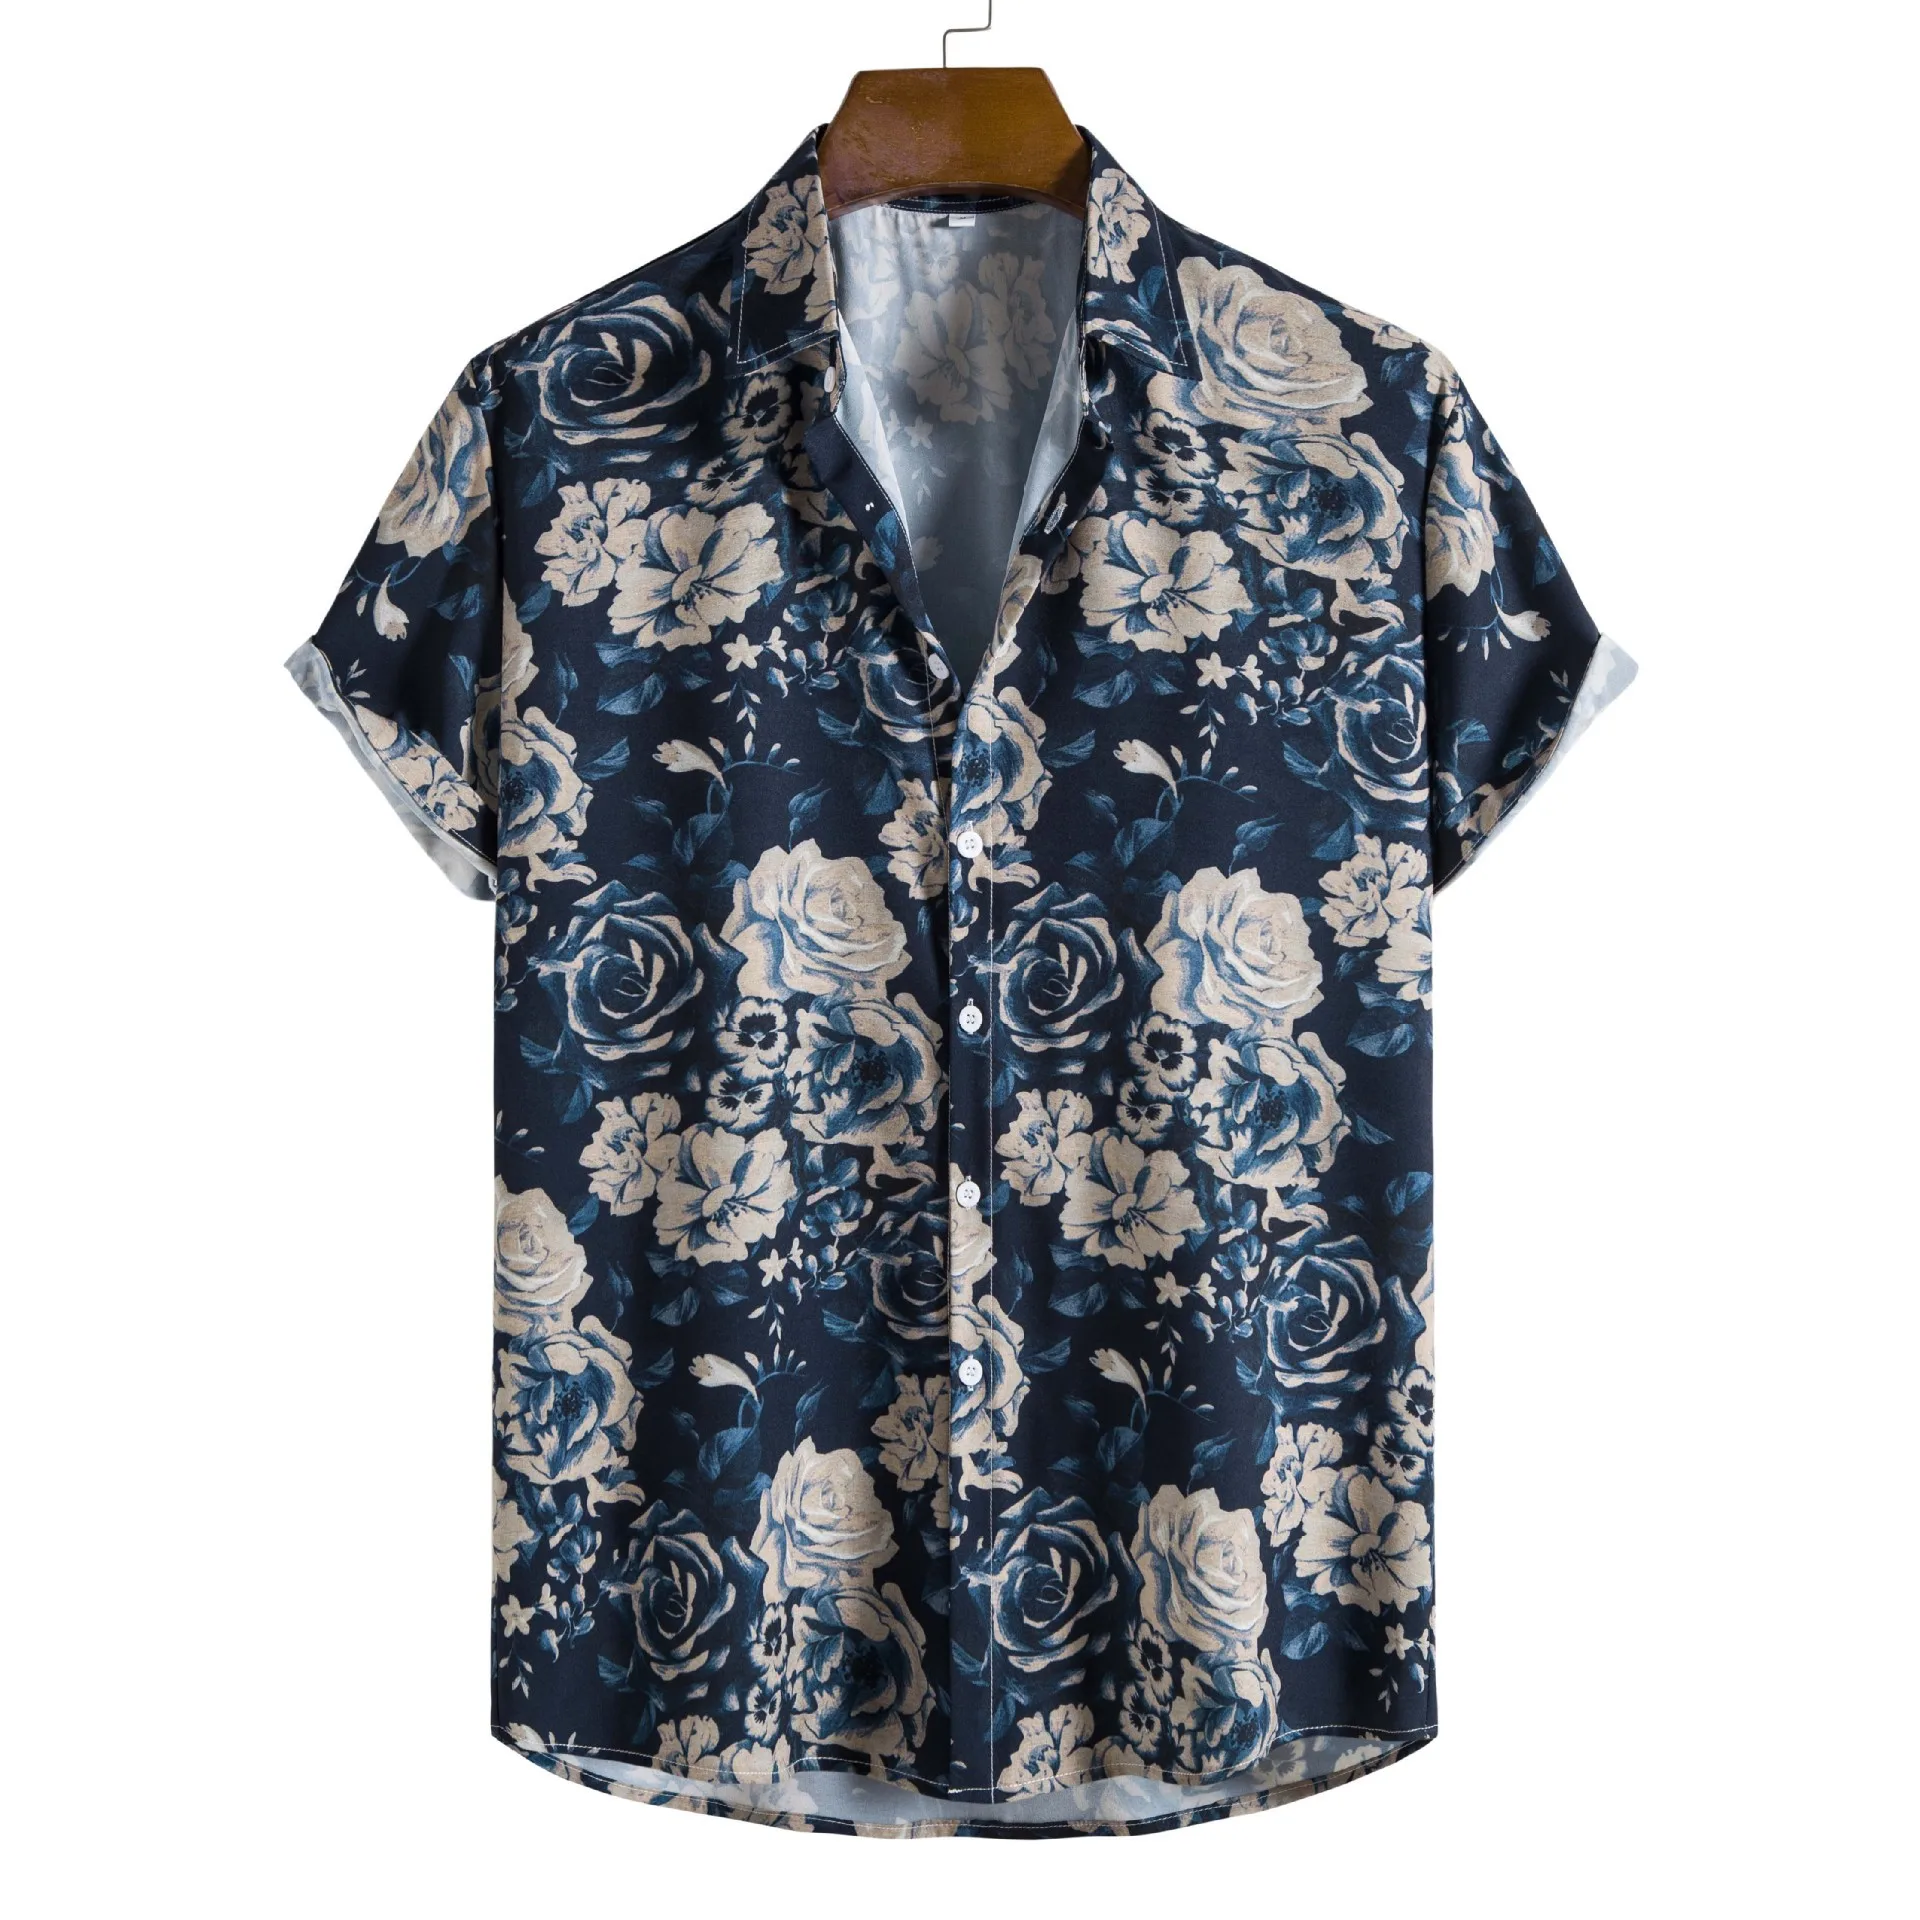 MEN FASHION Oversize Original Men's Shirts for Woman Top Women's Impact Floral Shirt Harajuku Cheap Men's Shirts Free Shipping